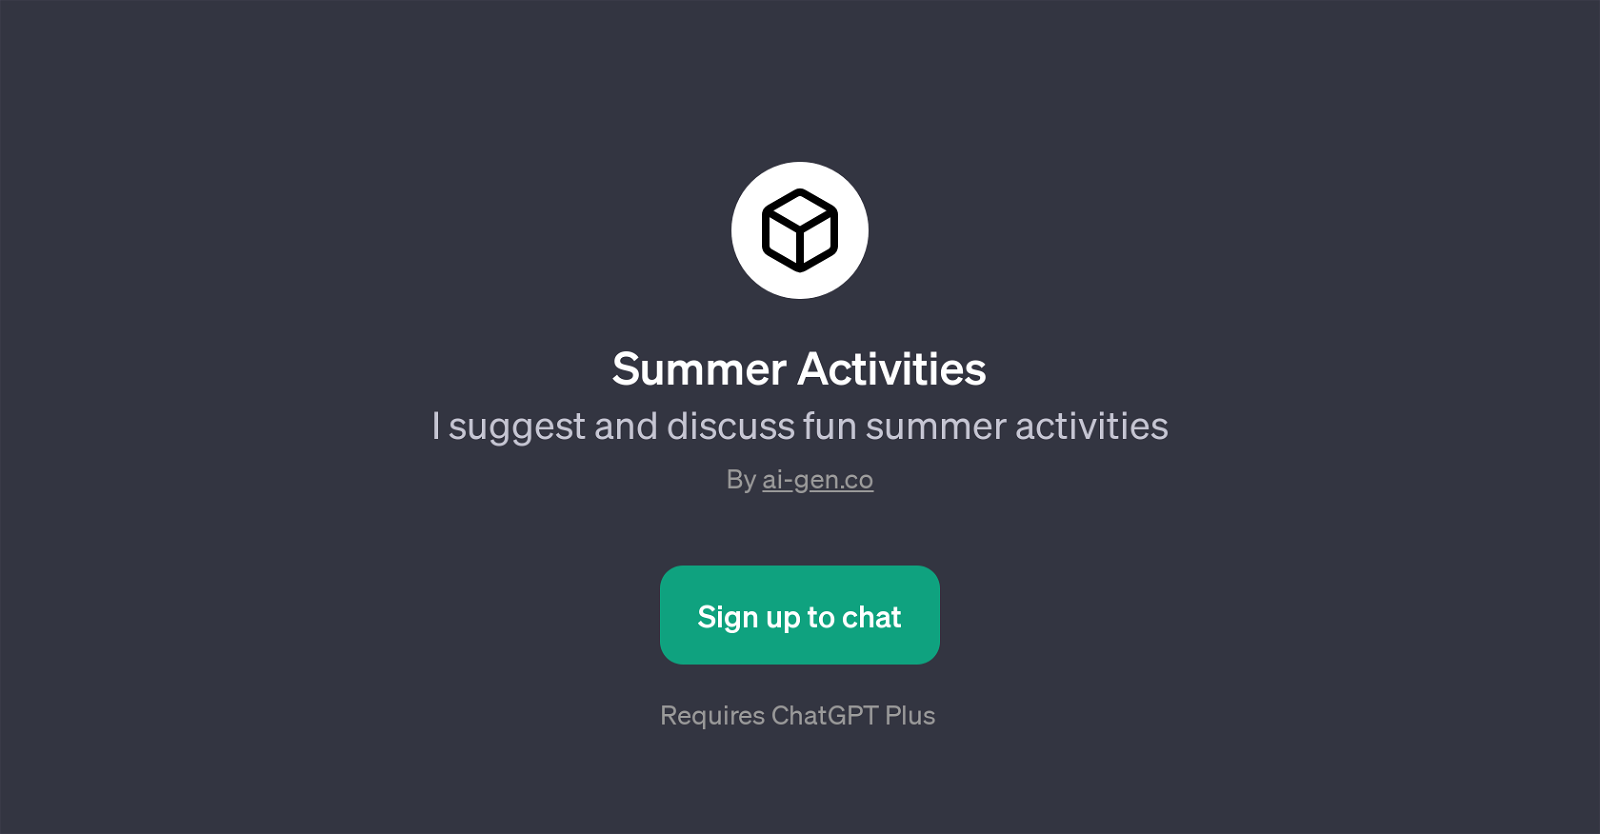 Summer Activities website